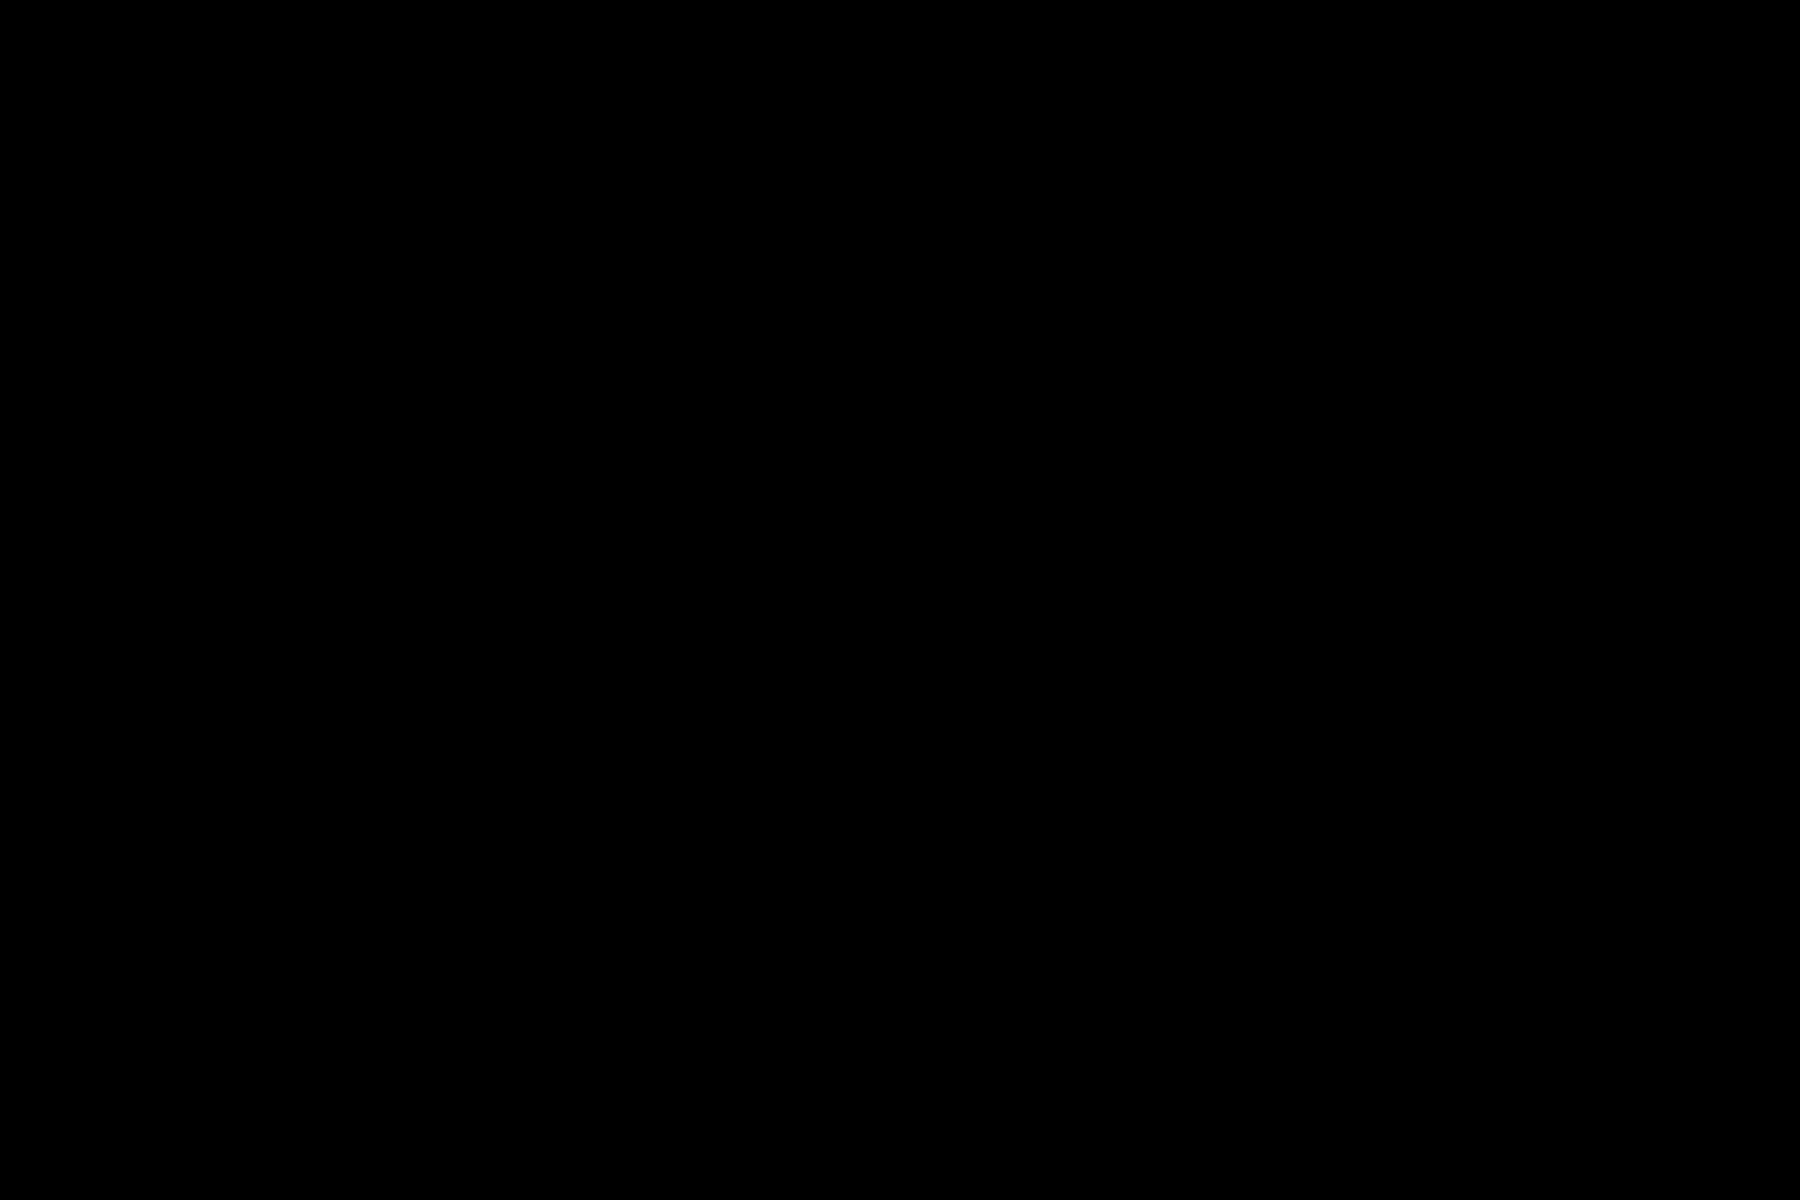 iAnthus logo animation